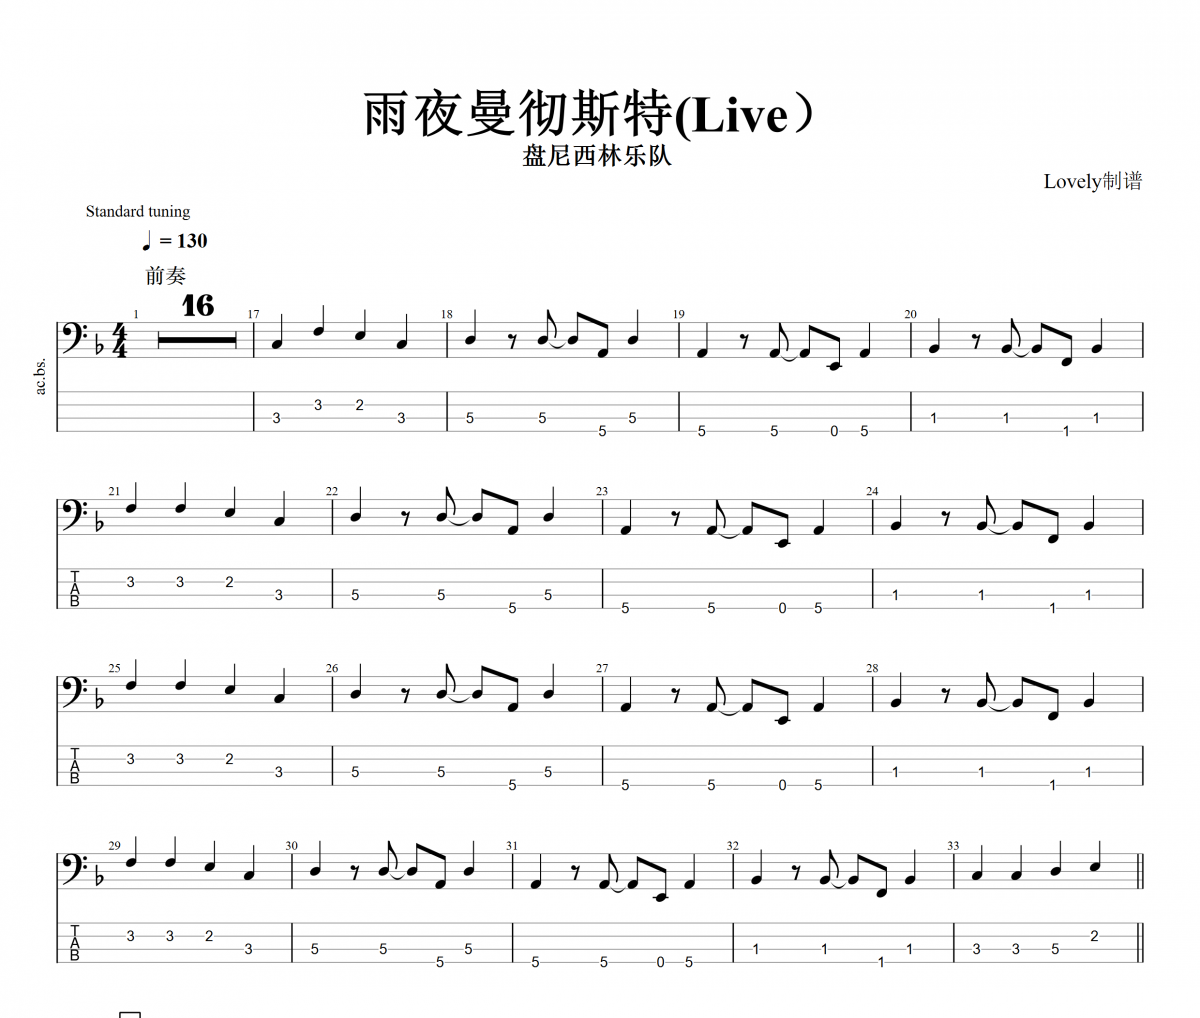 雨夜曼彻斯特贝斯谱 盘尼西林乐队《雨夜曼彻斯特》(Live)四线谱|贝斯谱+动态视频